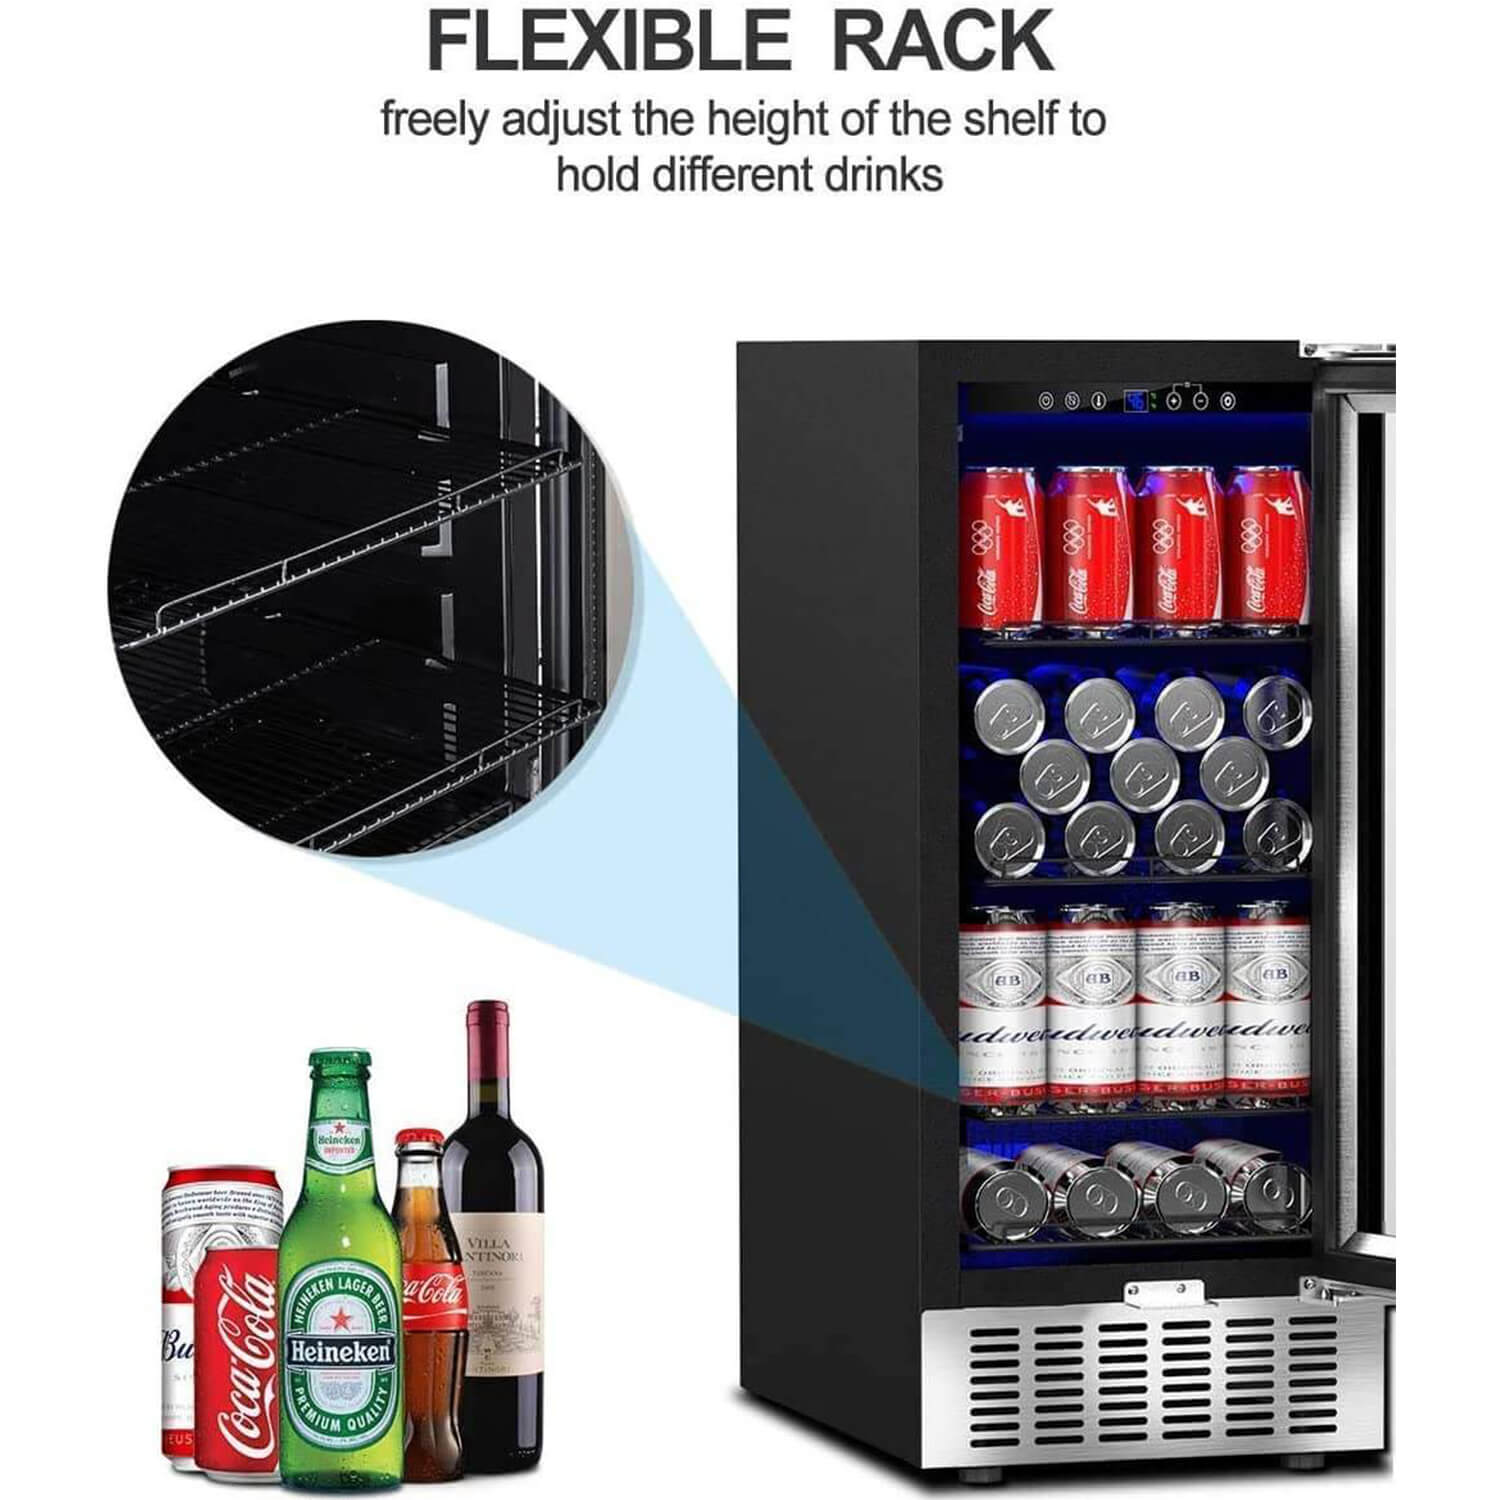 AAOBOSI Beverage Refrigerator 15 Inch 94 Cans Built-in Beverage Cooler